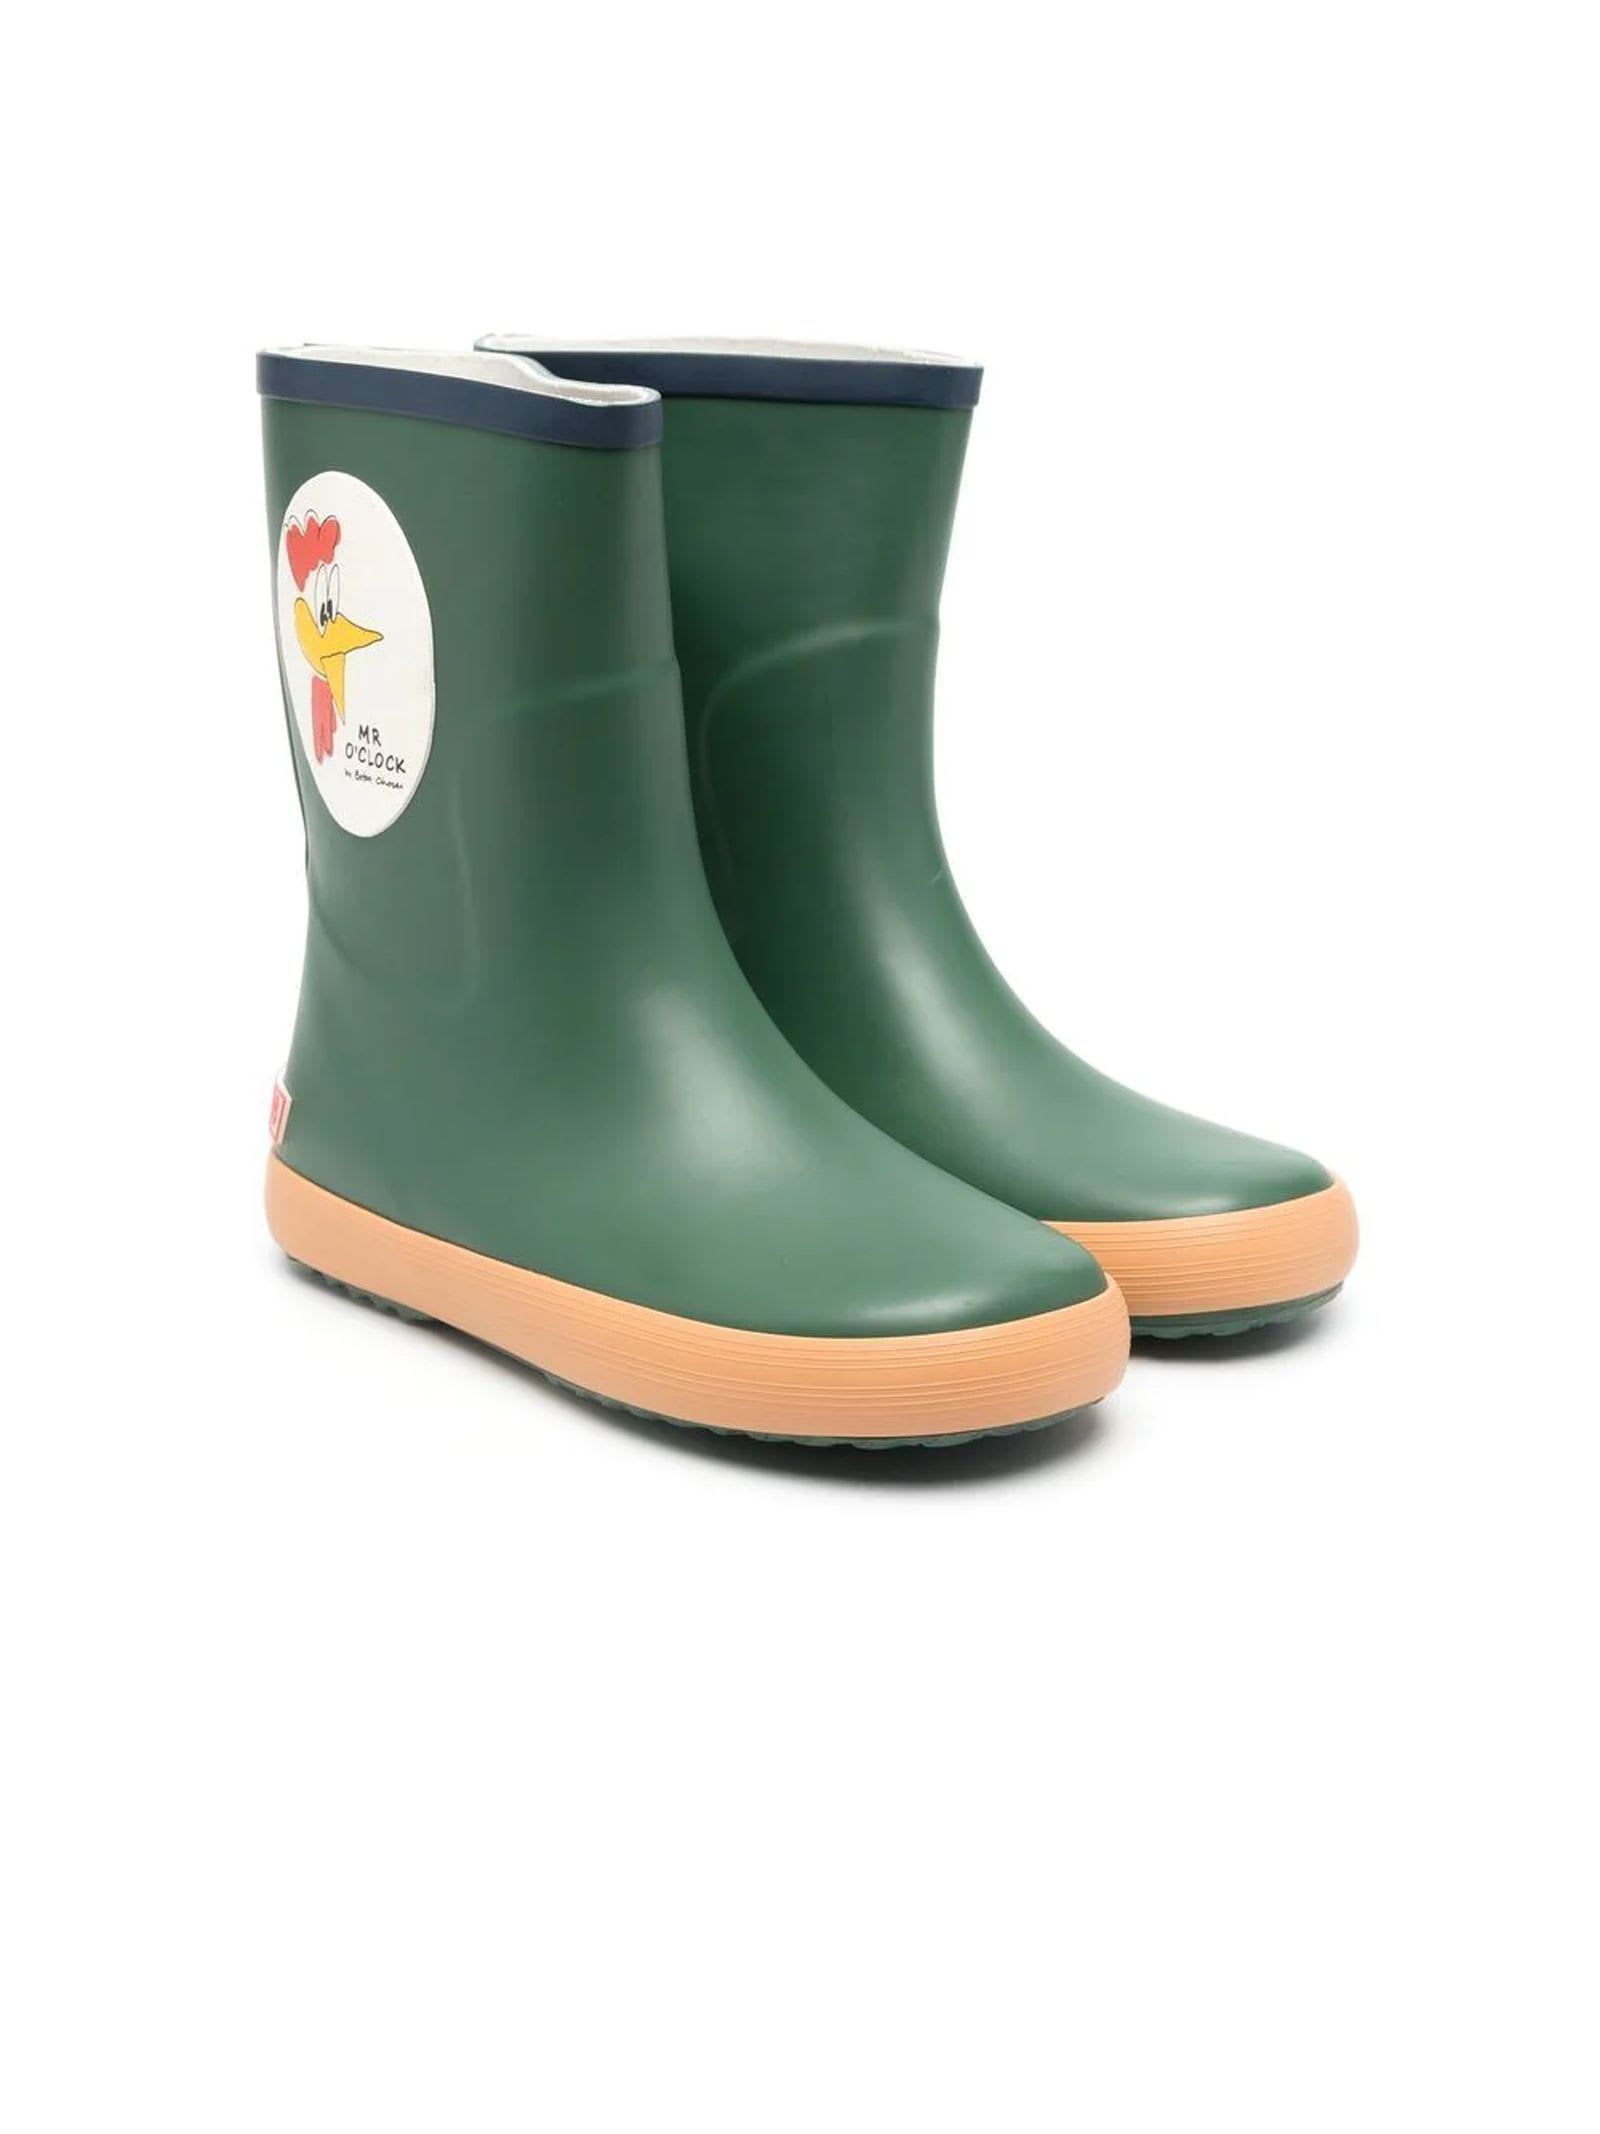 Bobo Choses Green Polyurethane Boots